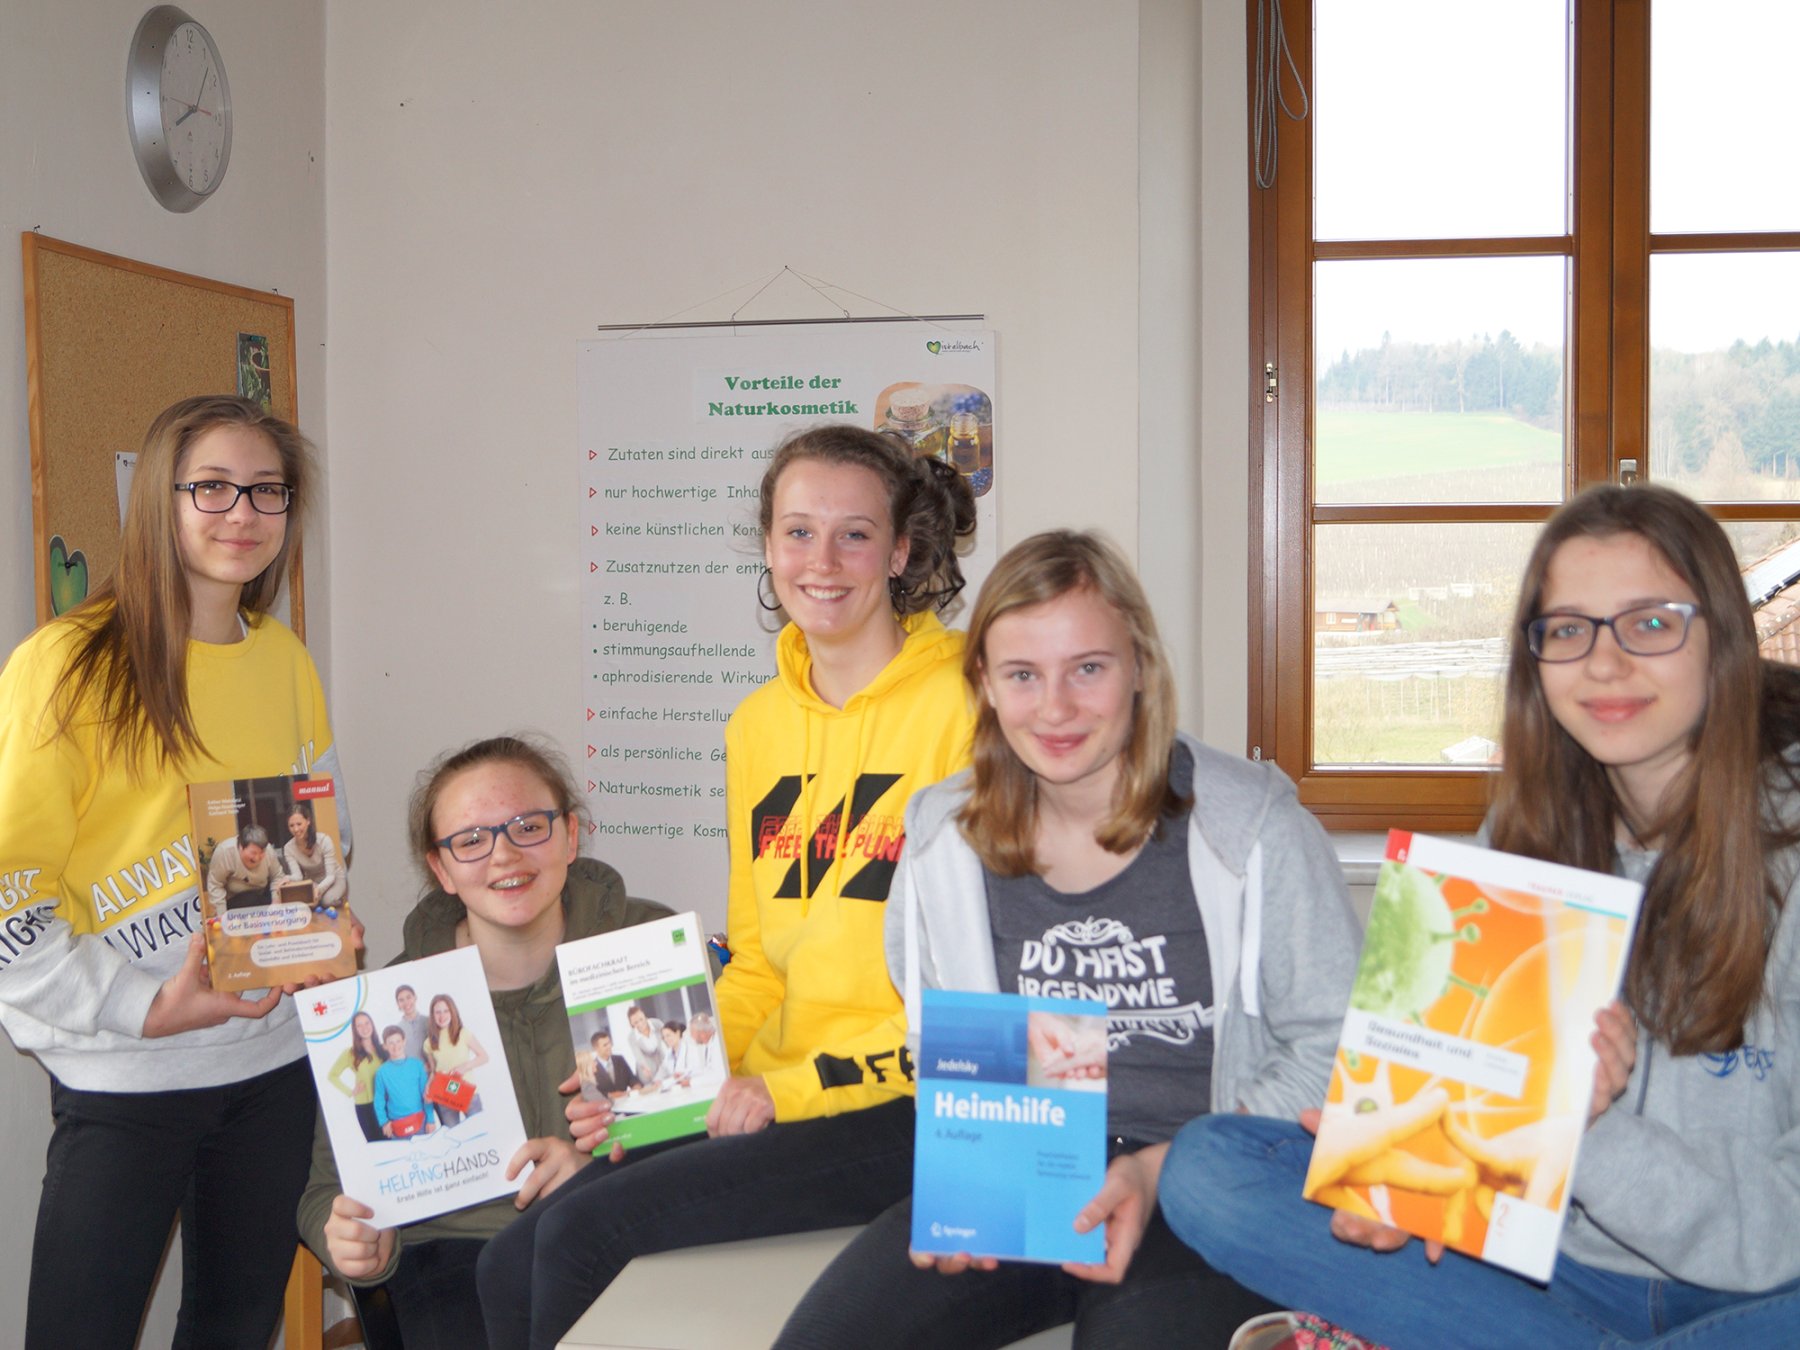 Fünf Schülerinnen zeigen Broschüren und Schulbücher